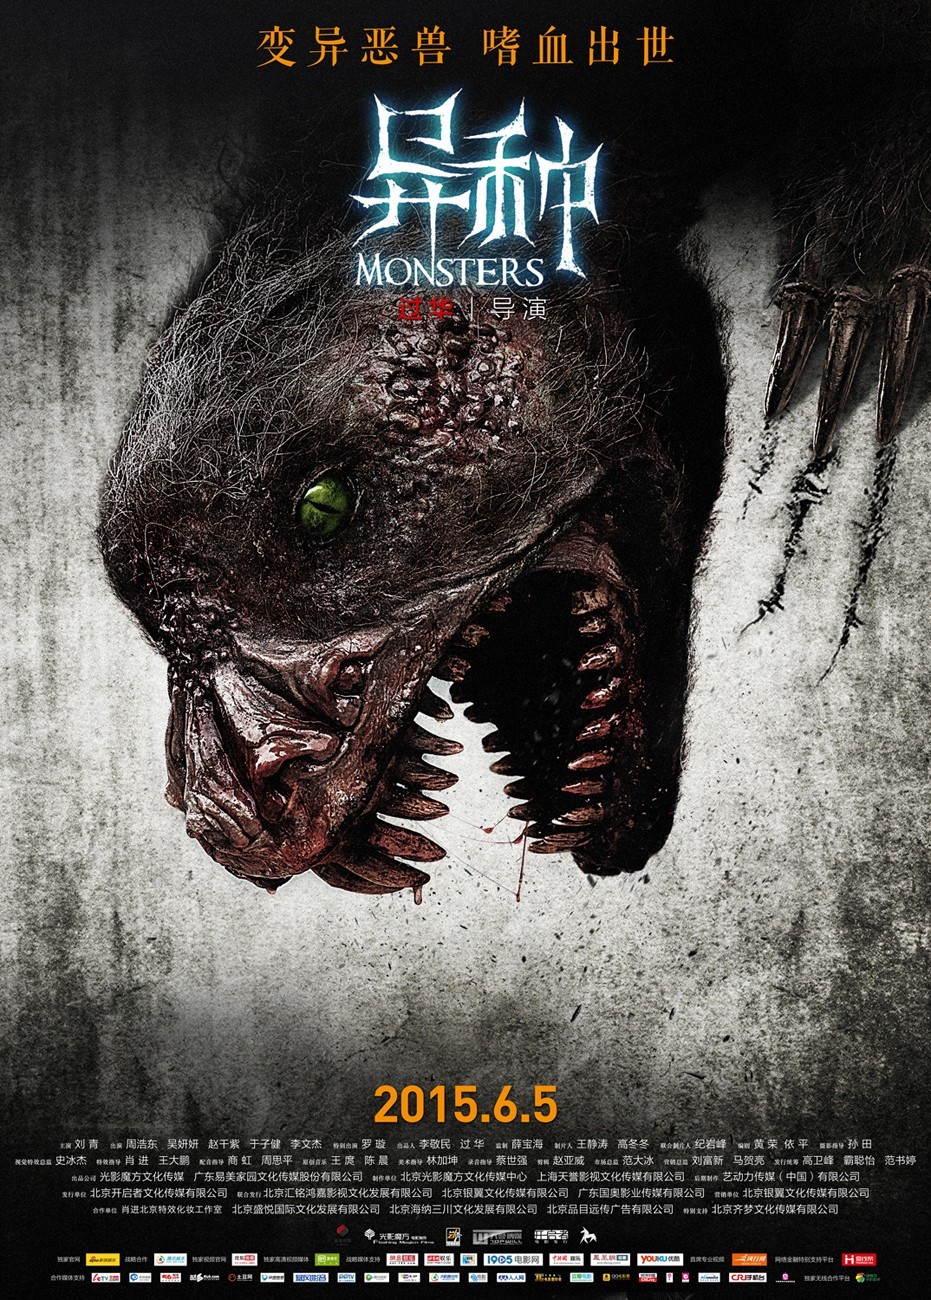 monster-Yi zhong-poster2